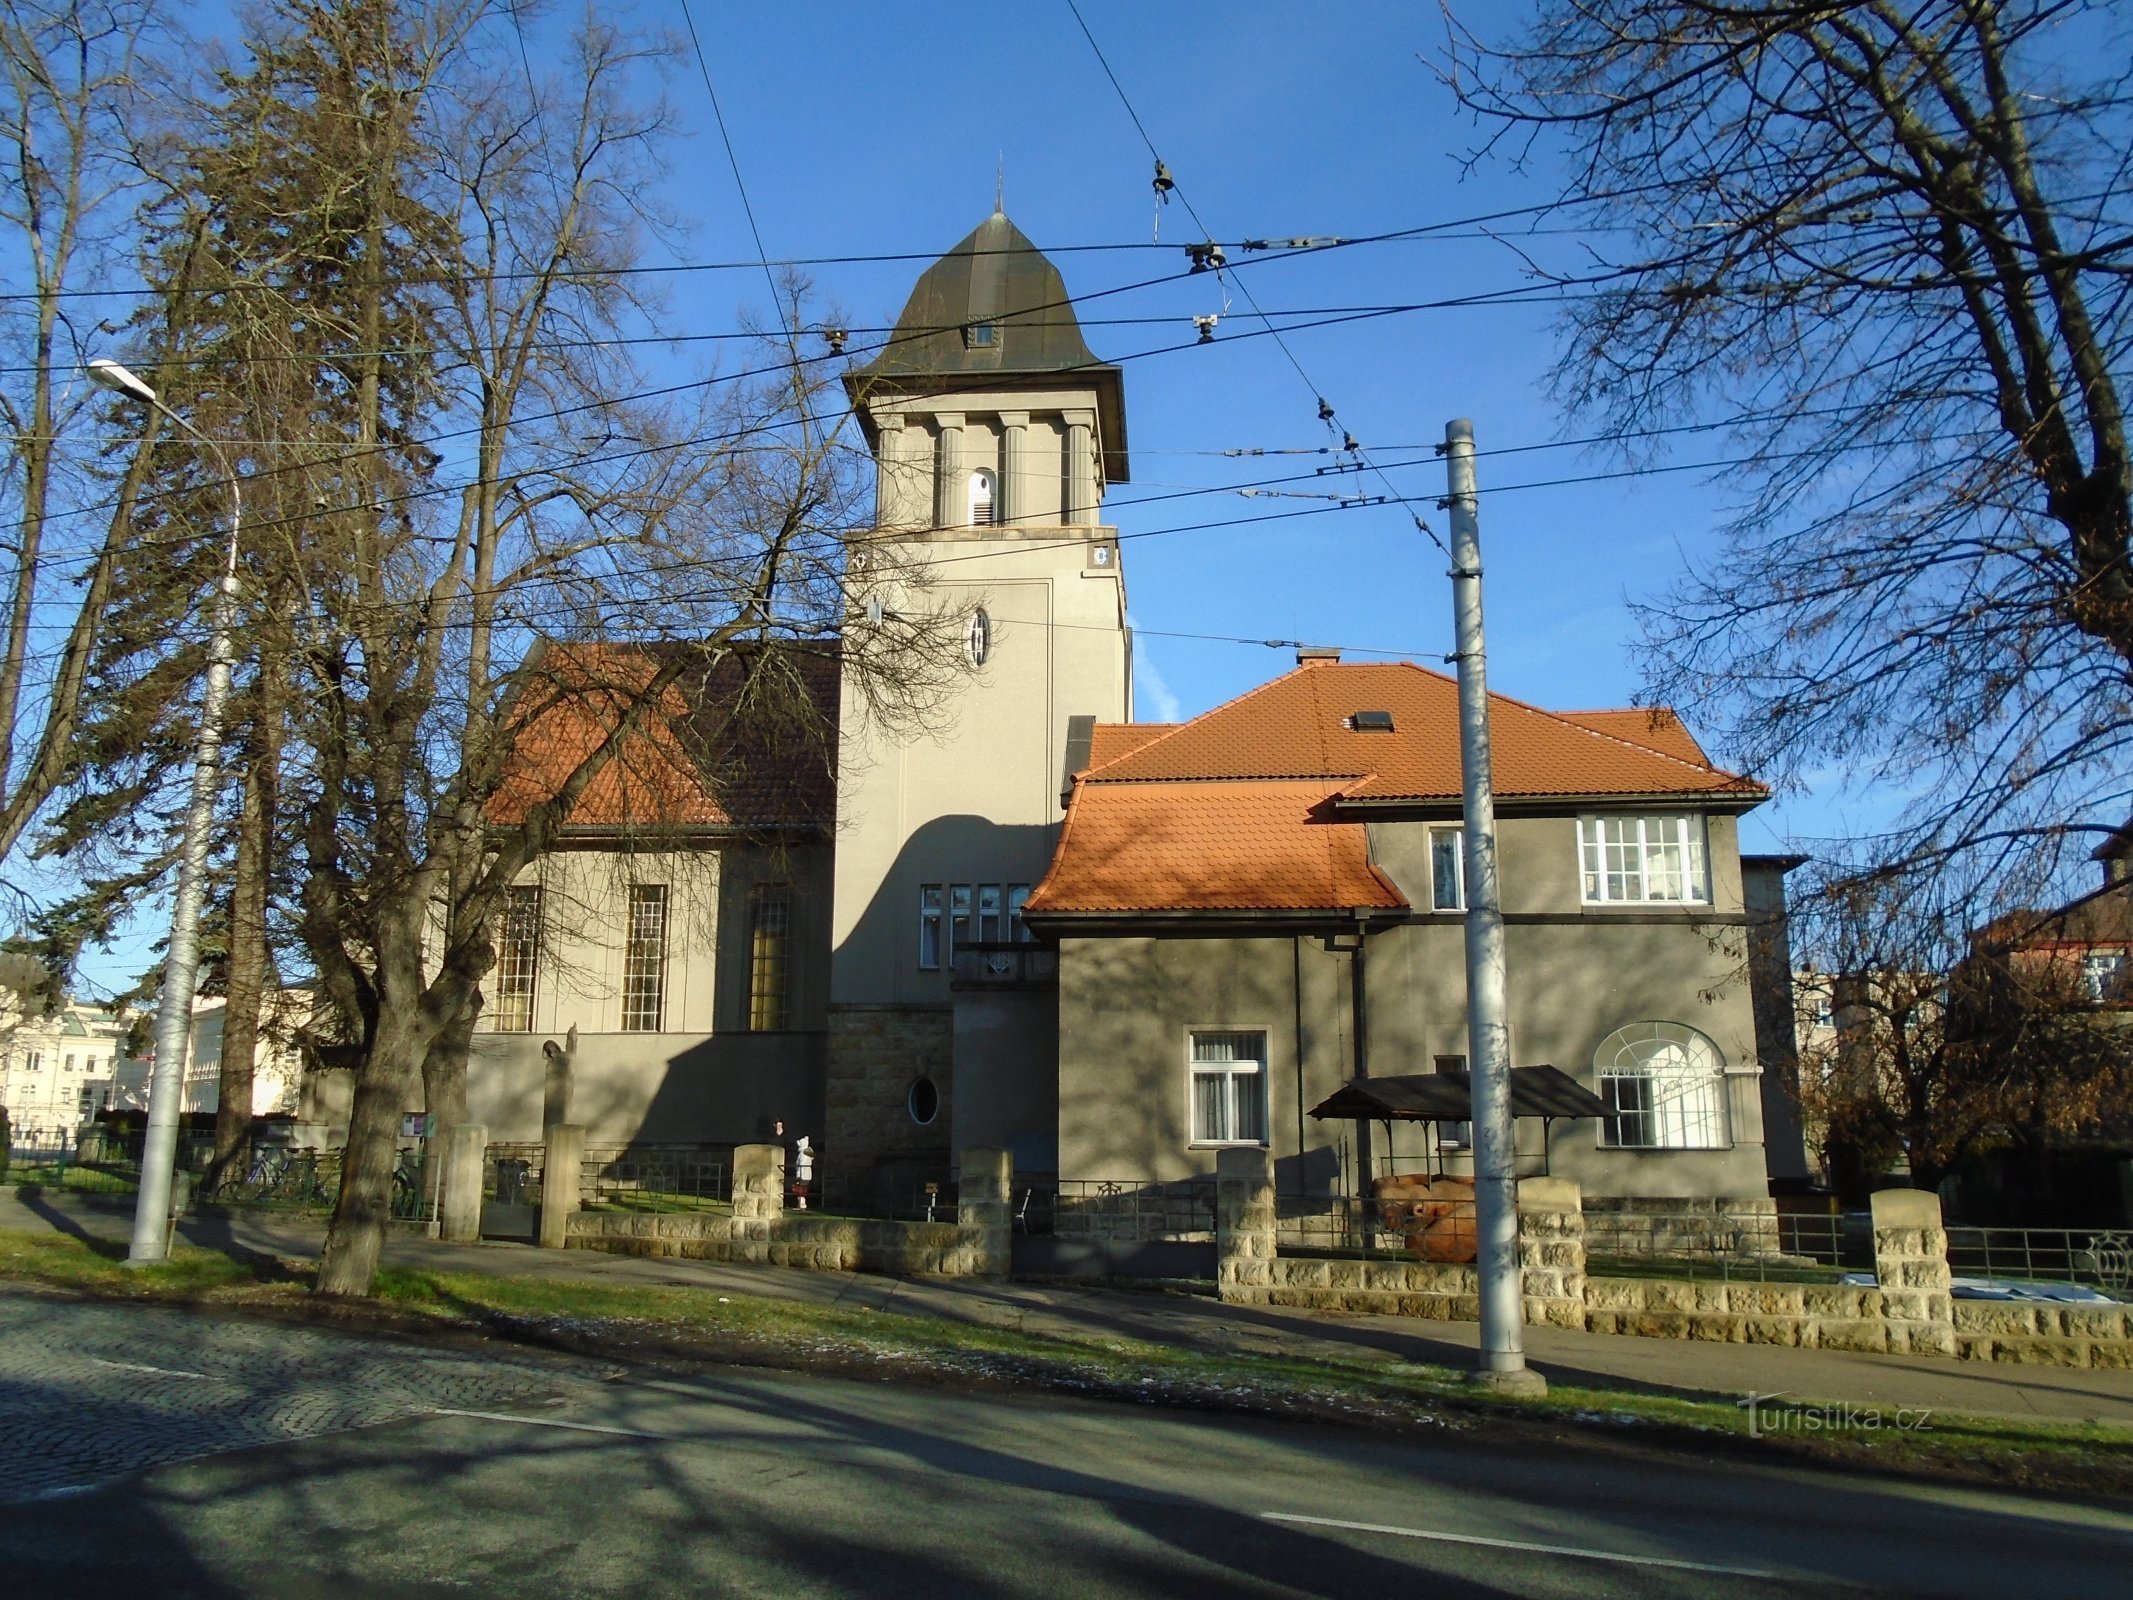 Evangelisk kirke med præstegård (Hradec Králové, 10.12.2017/XNUMX/XNUMX)